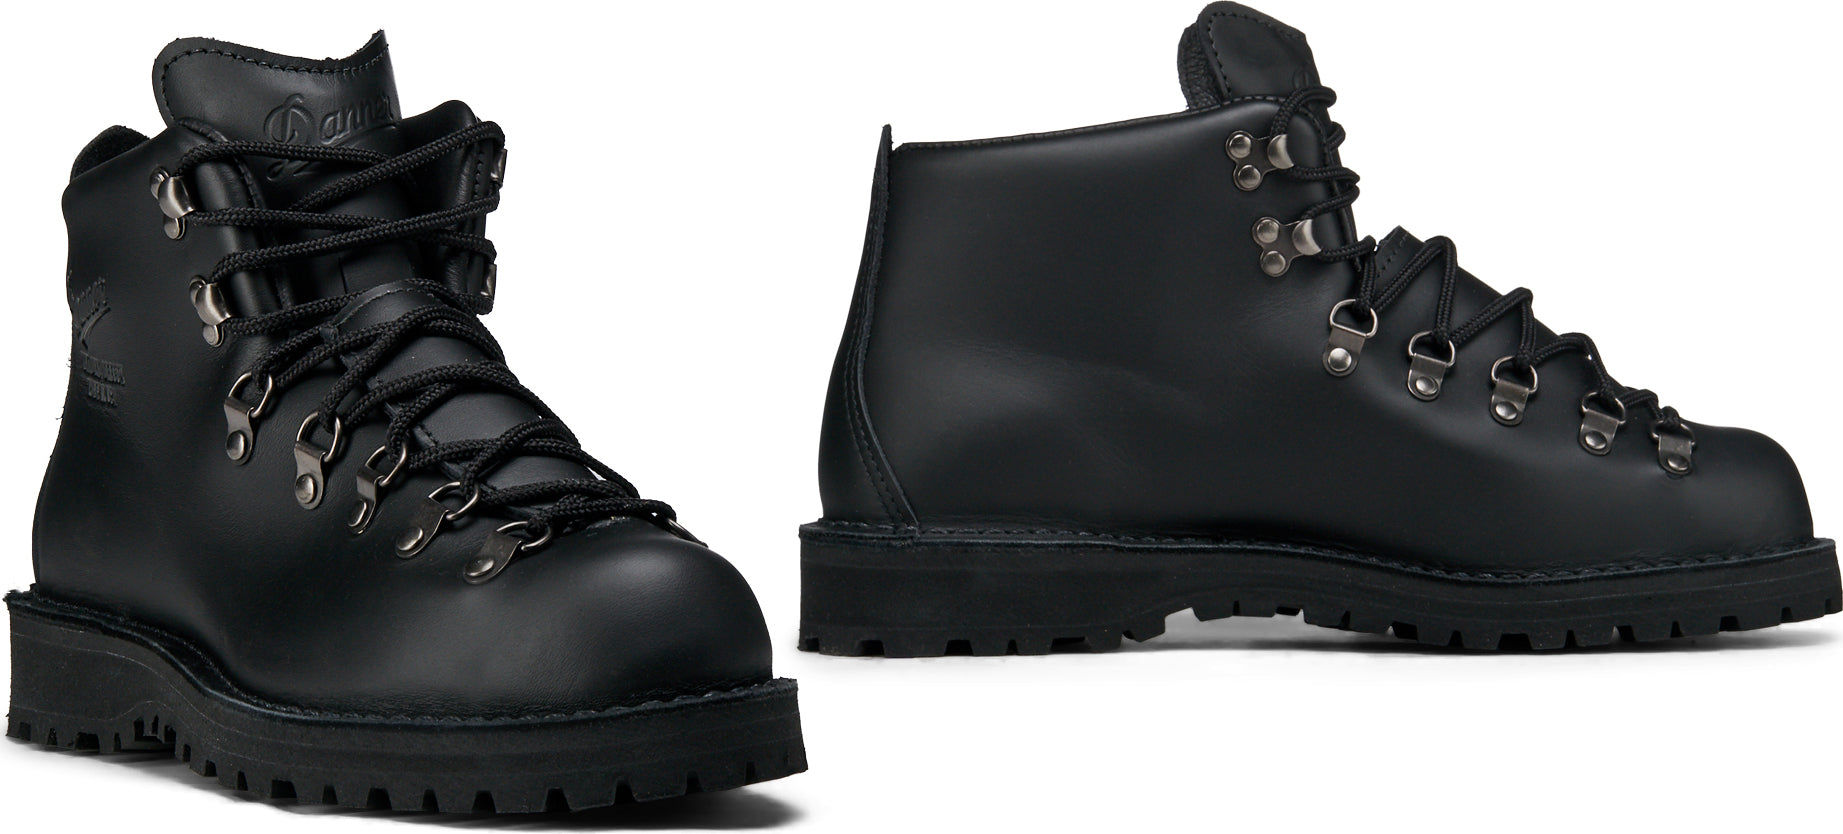 Danner Mountain Light Black Boots - Men 